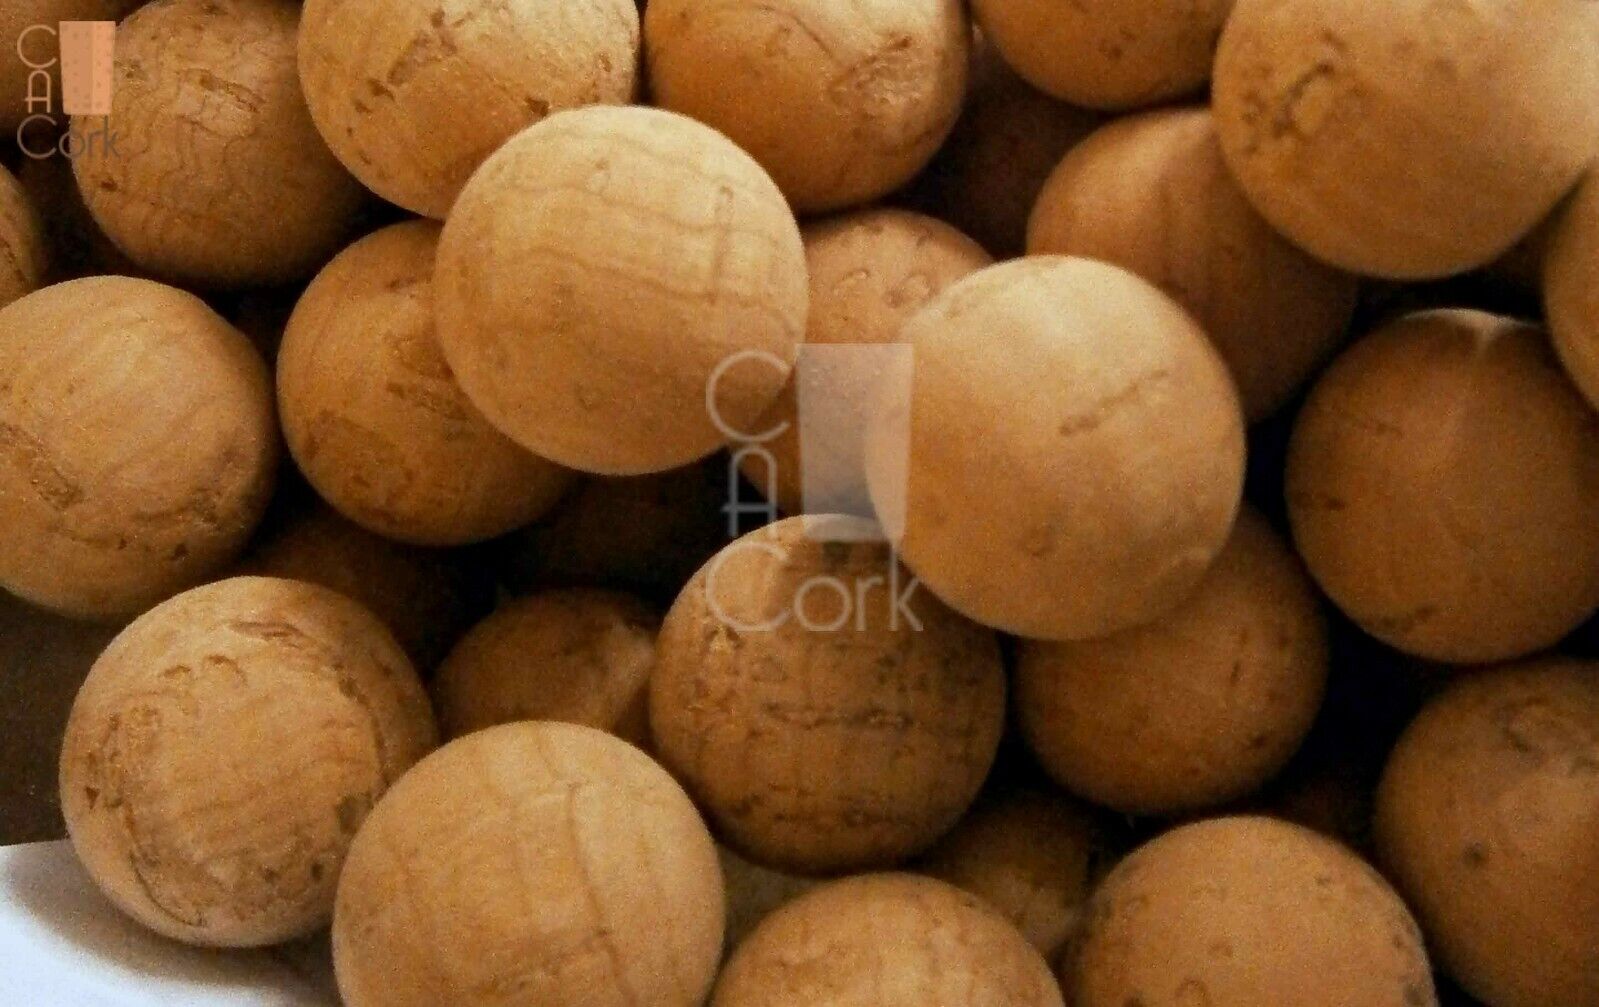 10// 30// 100// 500 units per packet Cork Balls 14mm